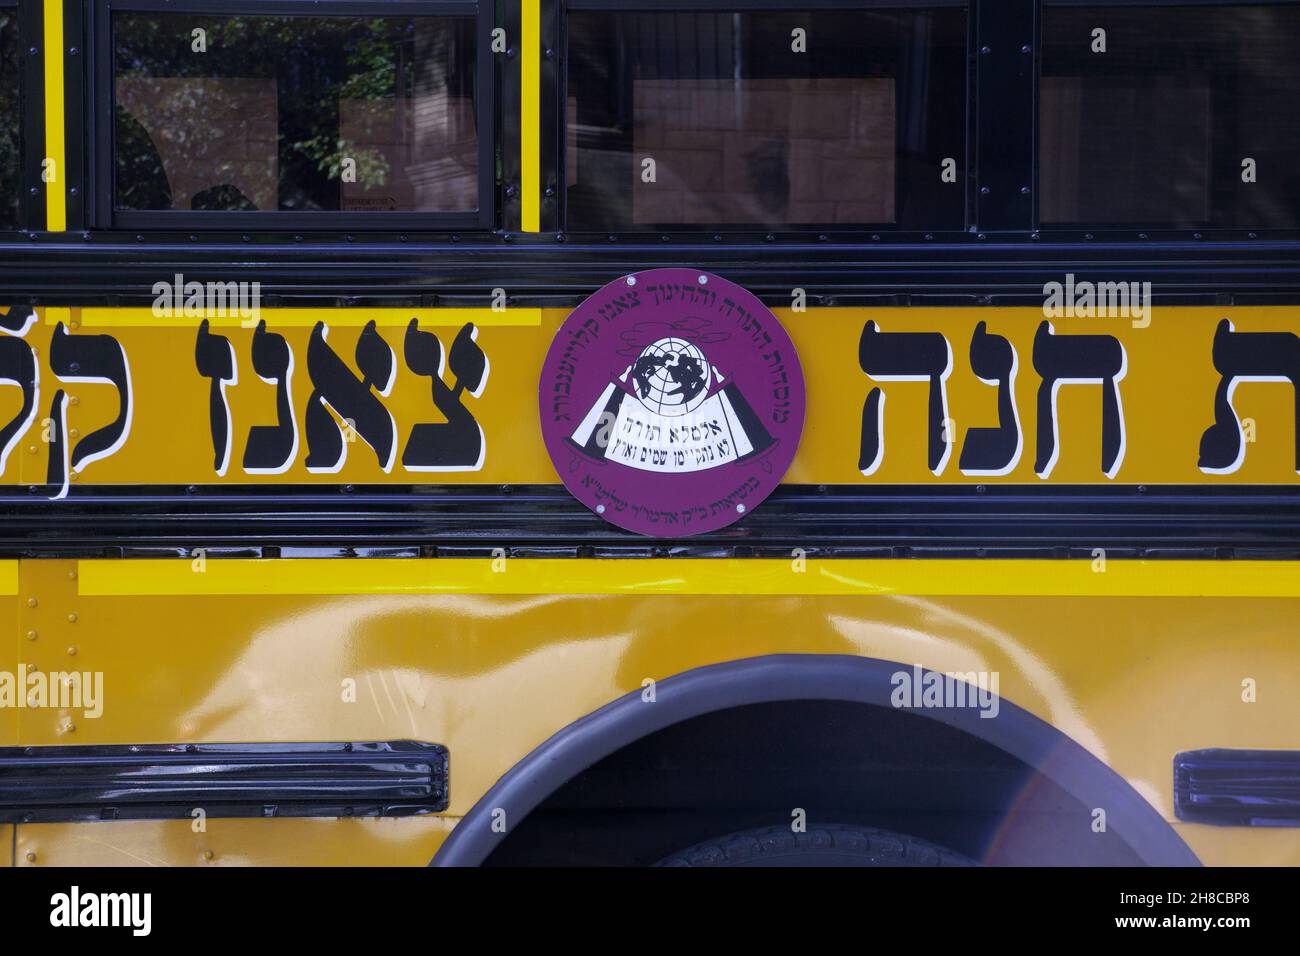 Ein Schulbus mit hebräischem Logo für die jüdische Gruppe Sanz Klausenburg mit chassidischem Namen. In Williamsburg, Brooklyn, New York City. Stockfoto